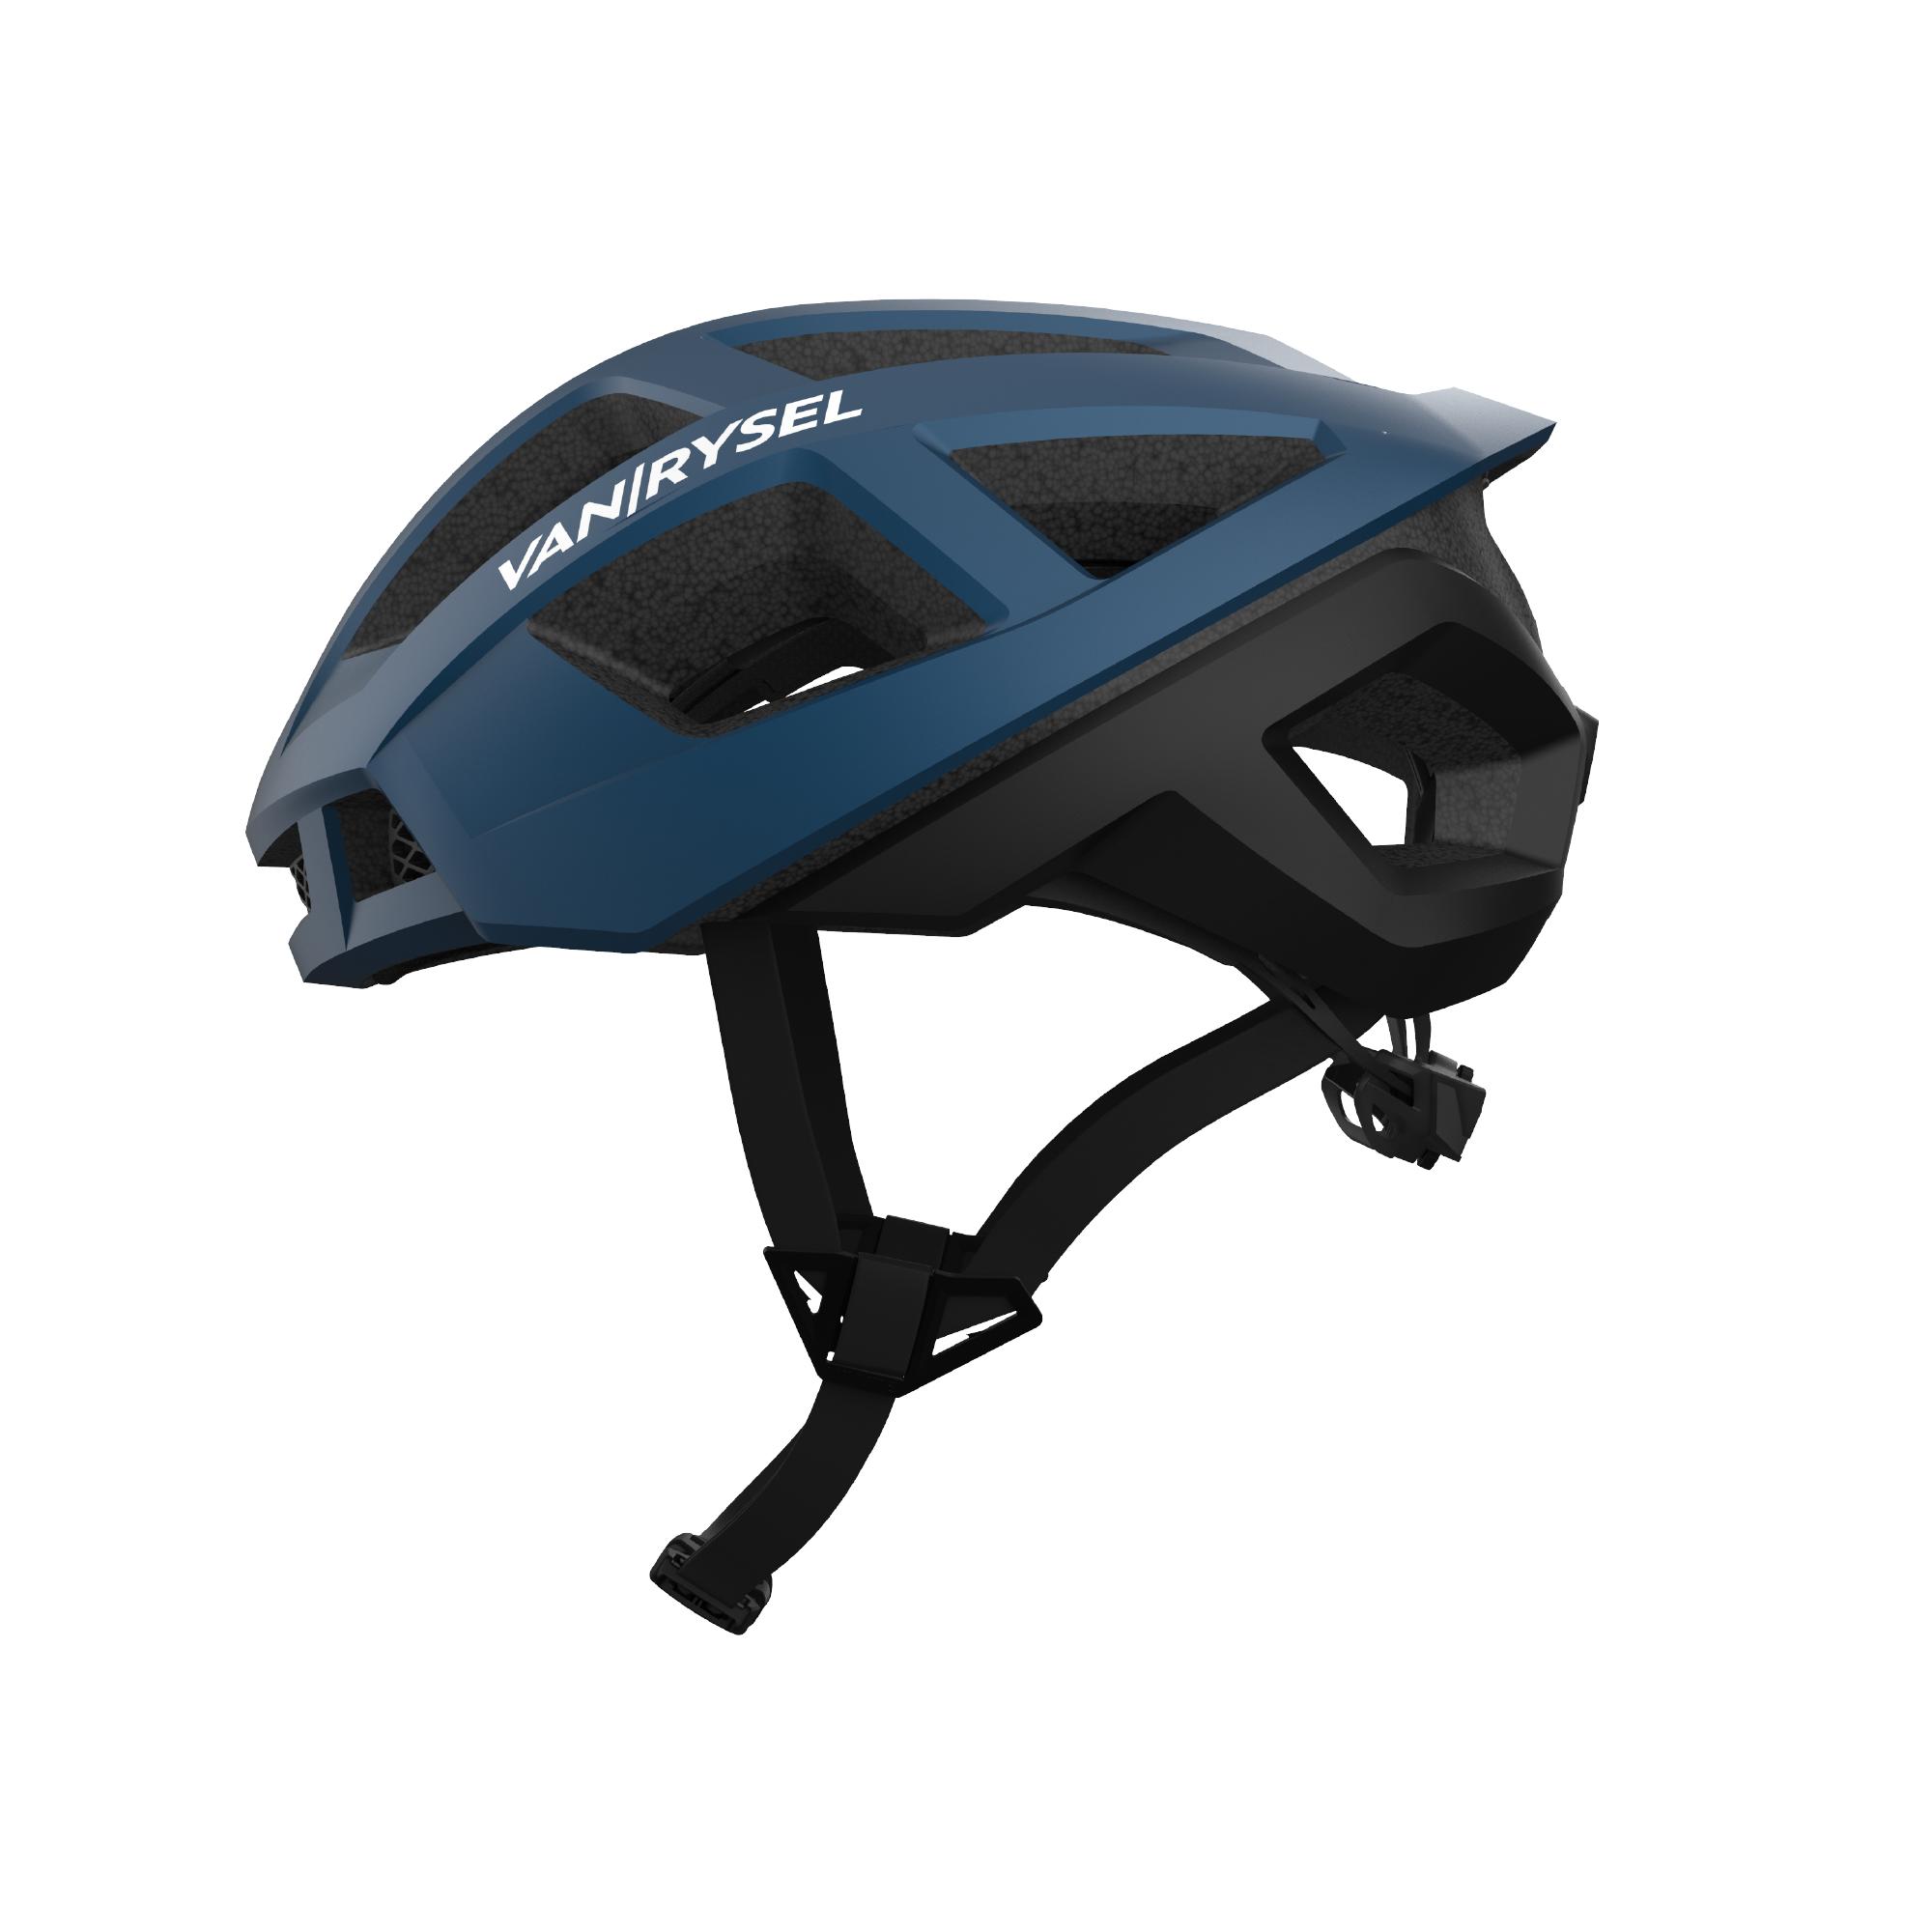 VAN RYSEL Racer Cycling Helmet - Blue